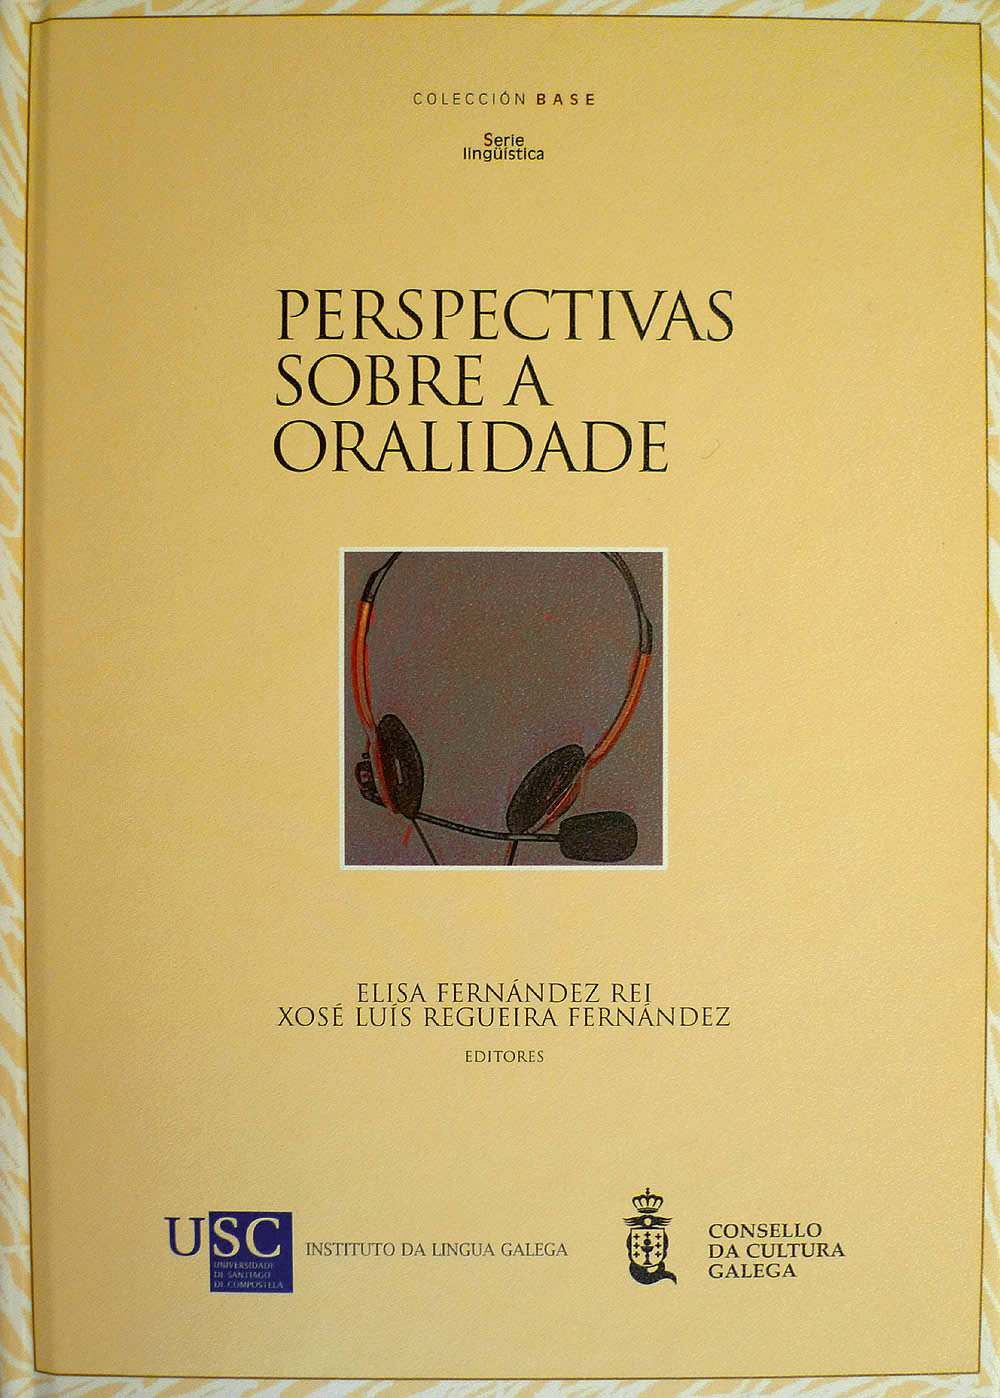 Imagen de portada del libro Perspectivas sobre a oralidade